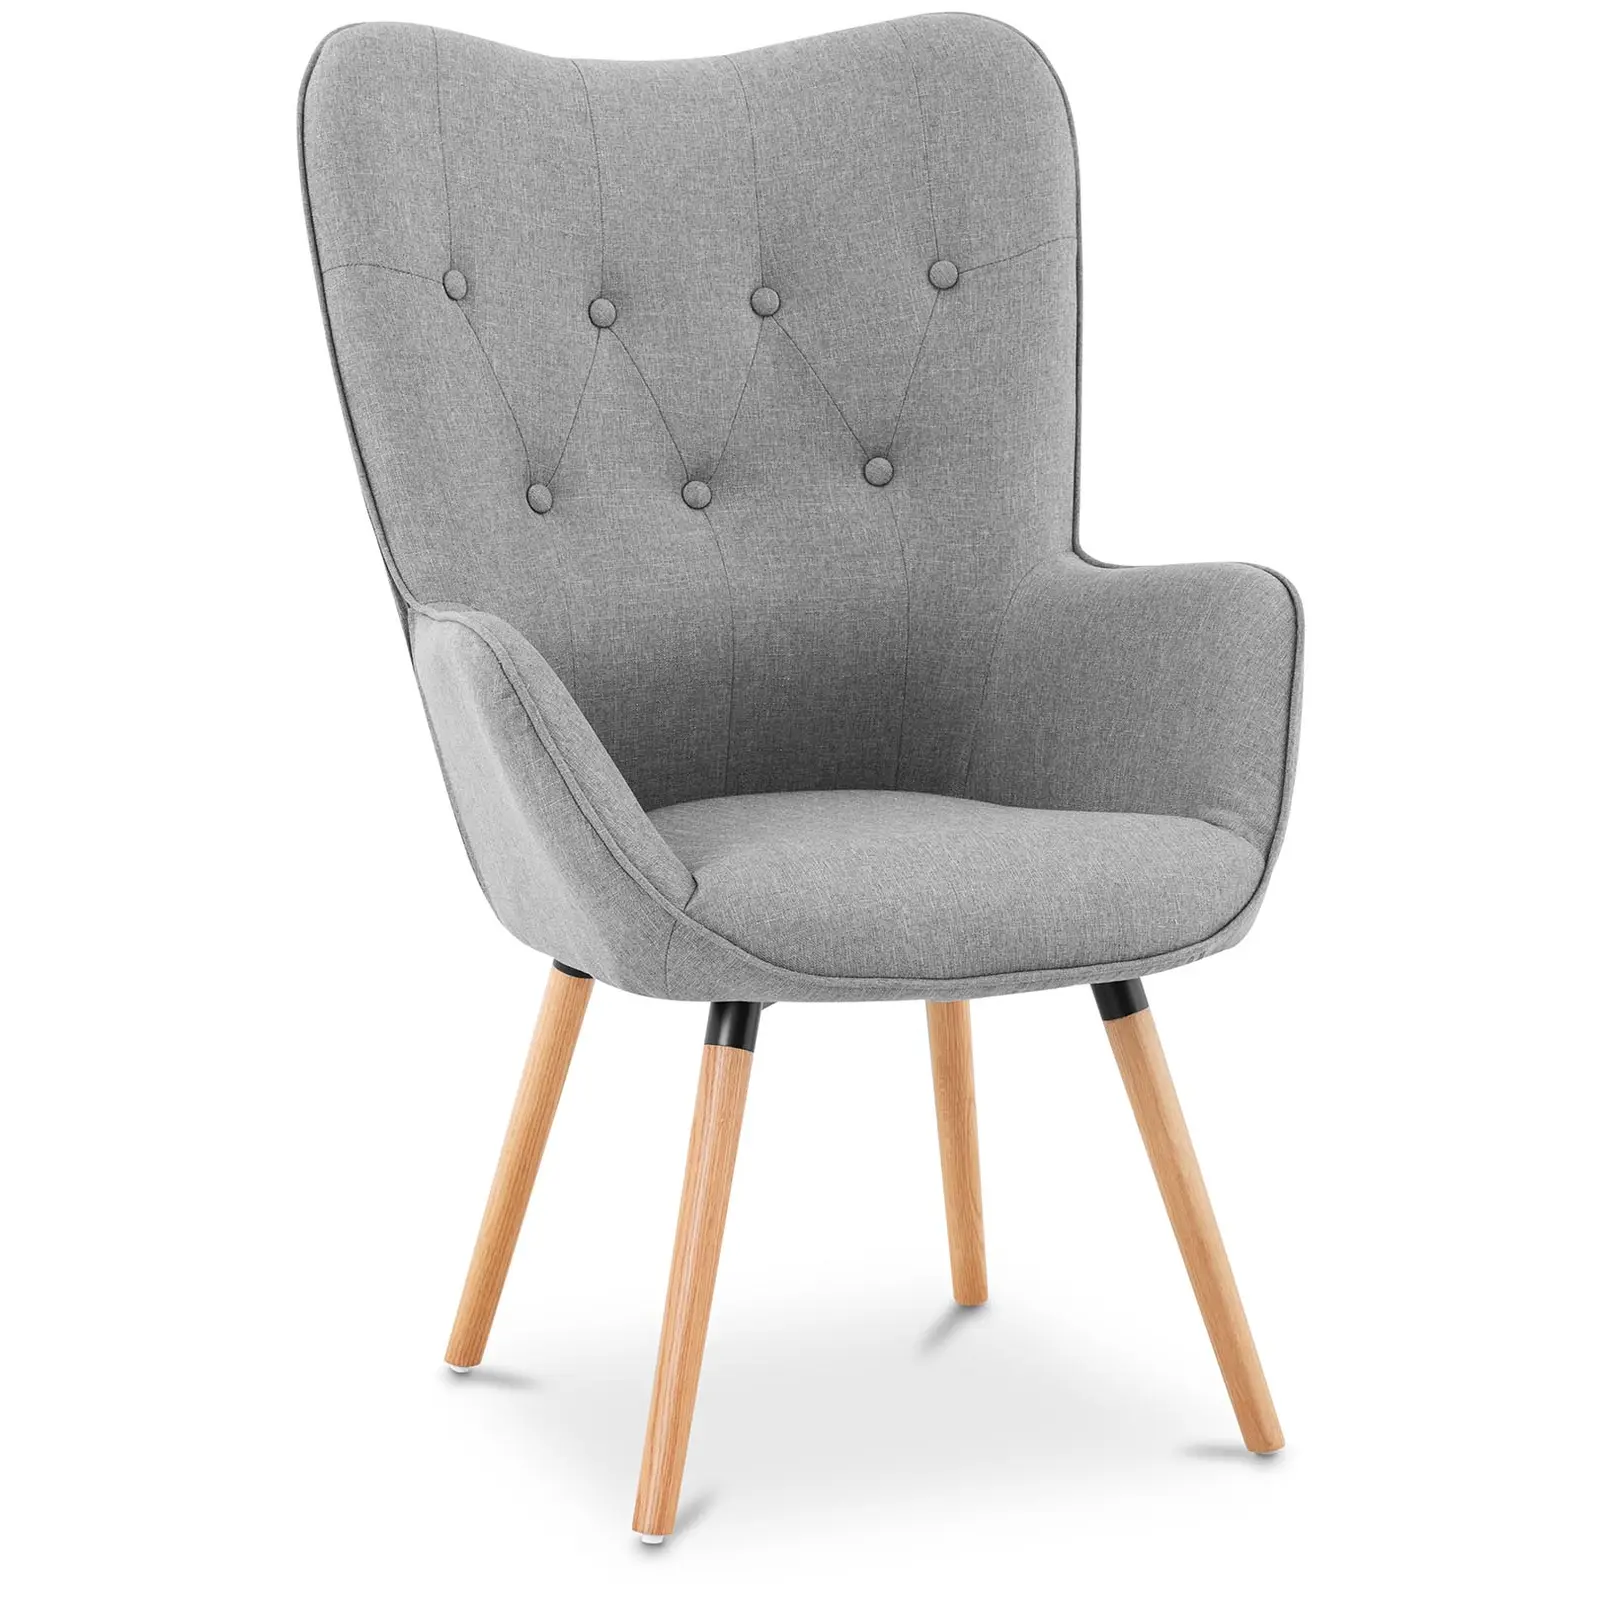 Čalúnená stolička - do 160 kg - sedadlo 43 x 49 cm - šedá